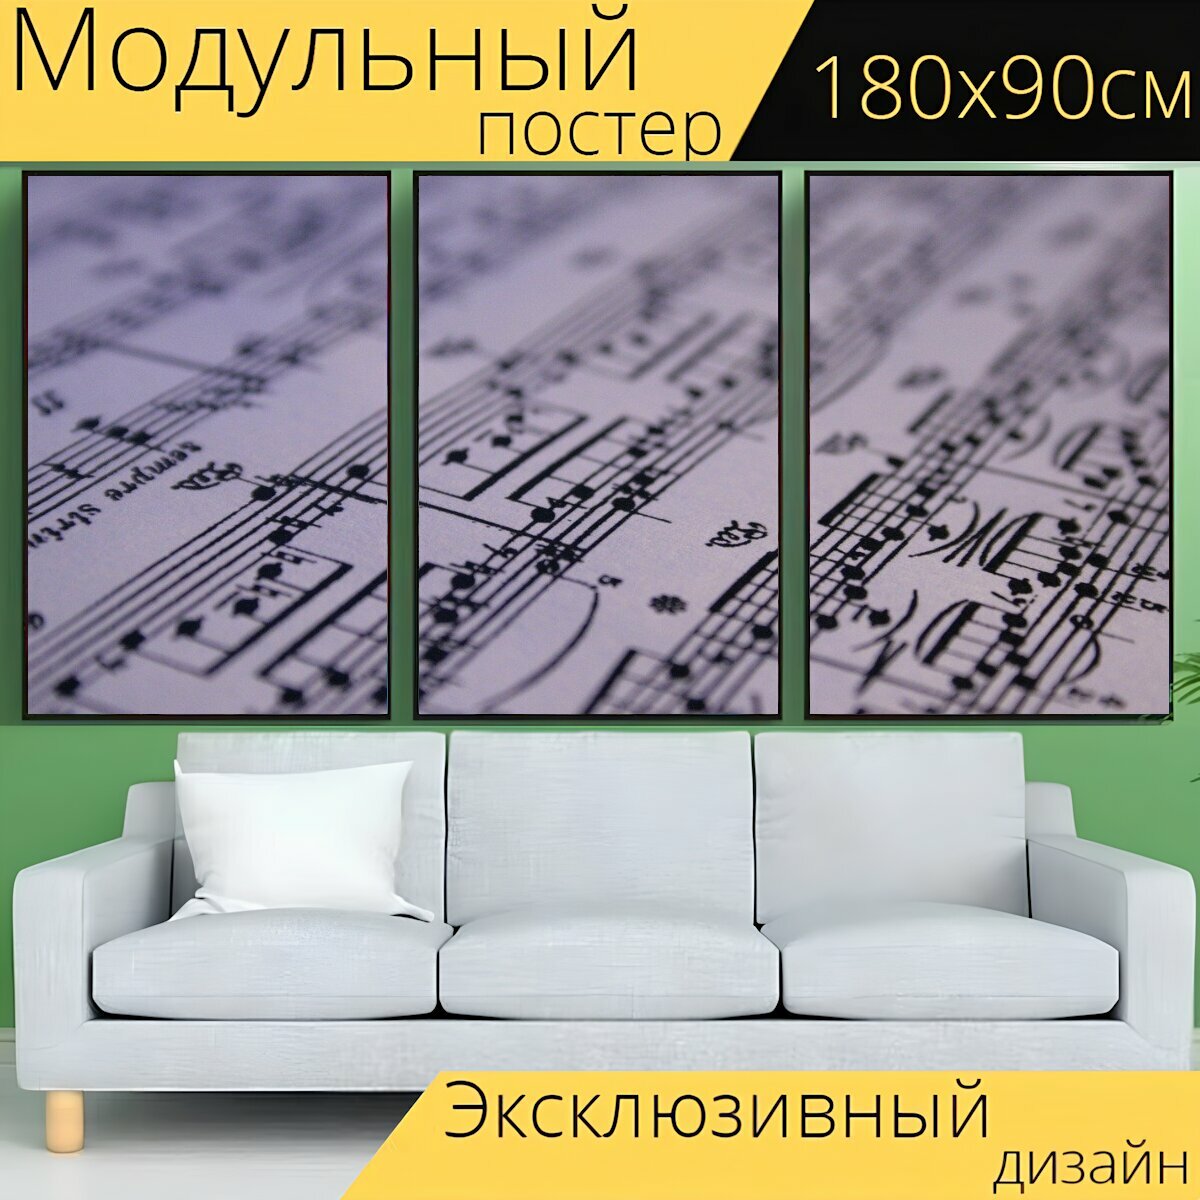 Модульный постер "Бумага, распечатать, музыка" 180 x 90 см. для интерьера